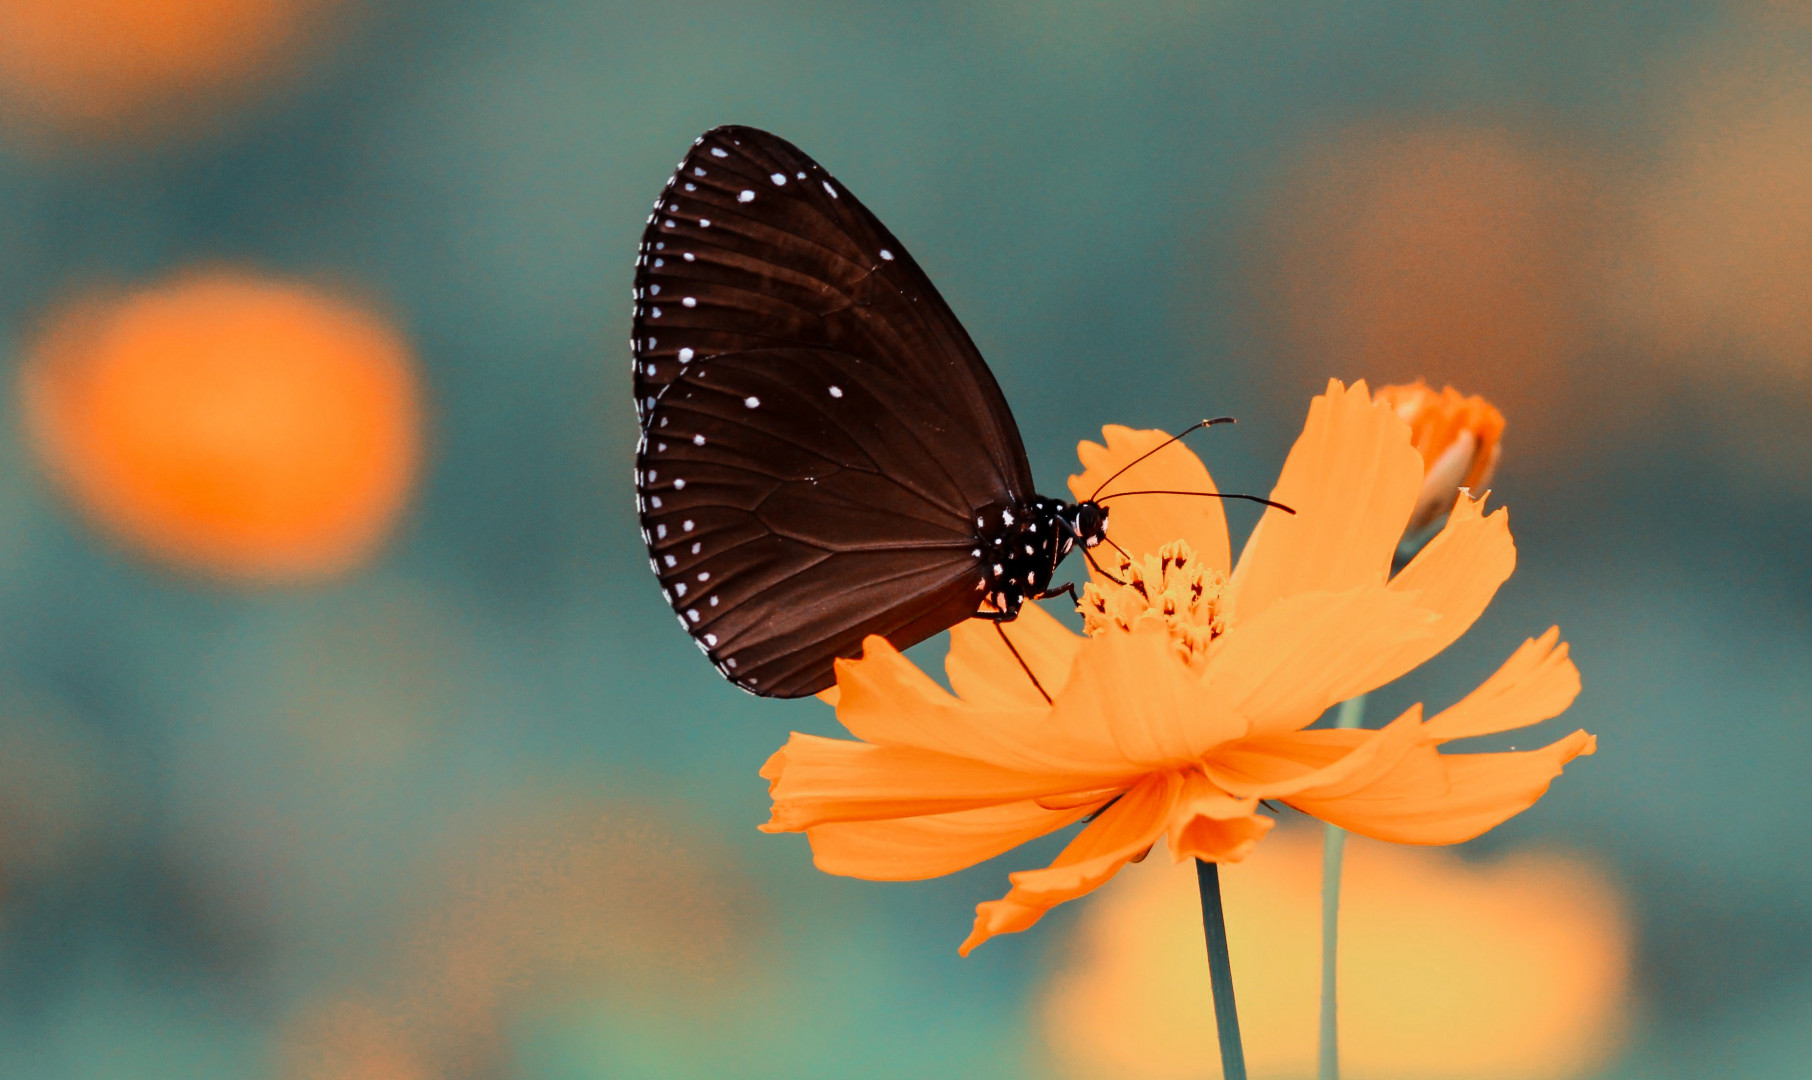 Motyl spija nektar z pomarańczowego kwiatka